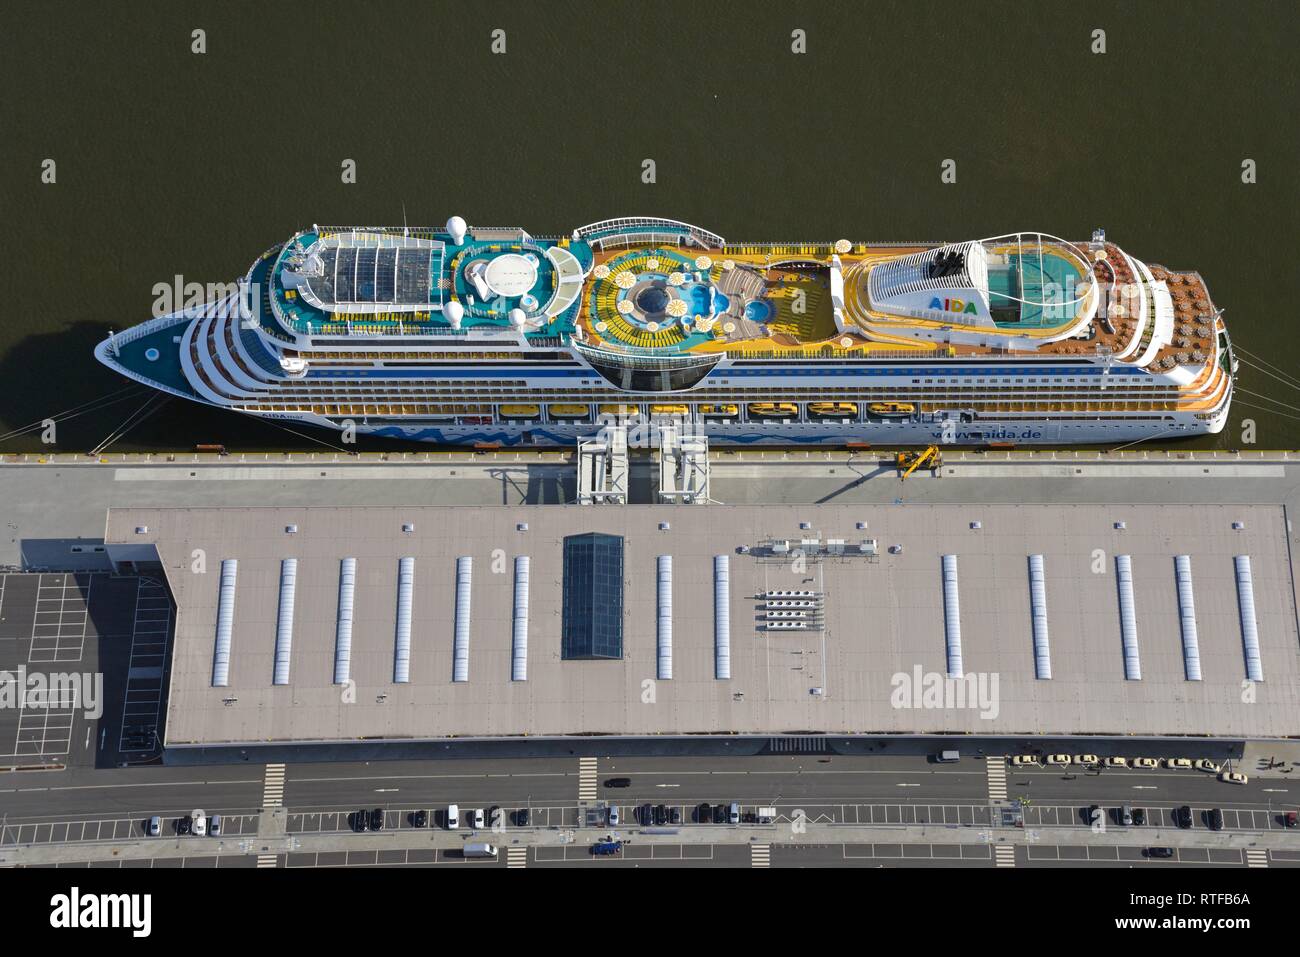 Vista aérea, Aidamar cruceros en el muelle en el puerto, Hamburgo, Alemania. Foto de stock